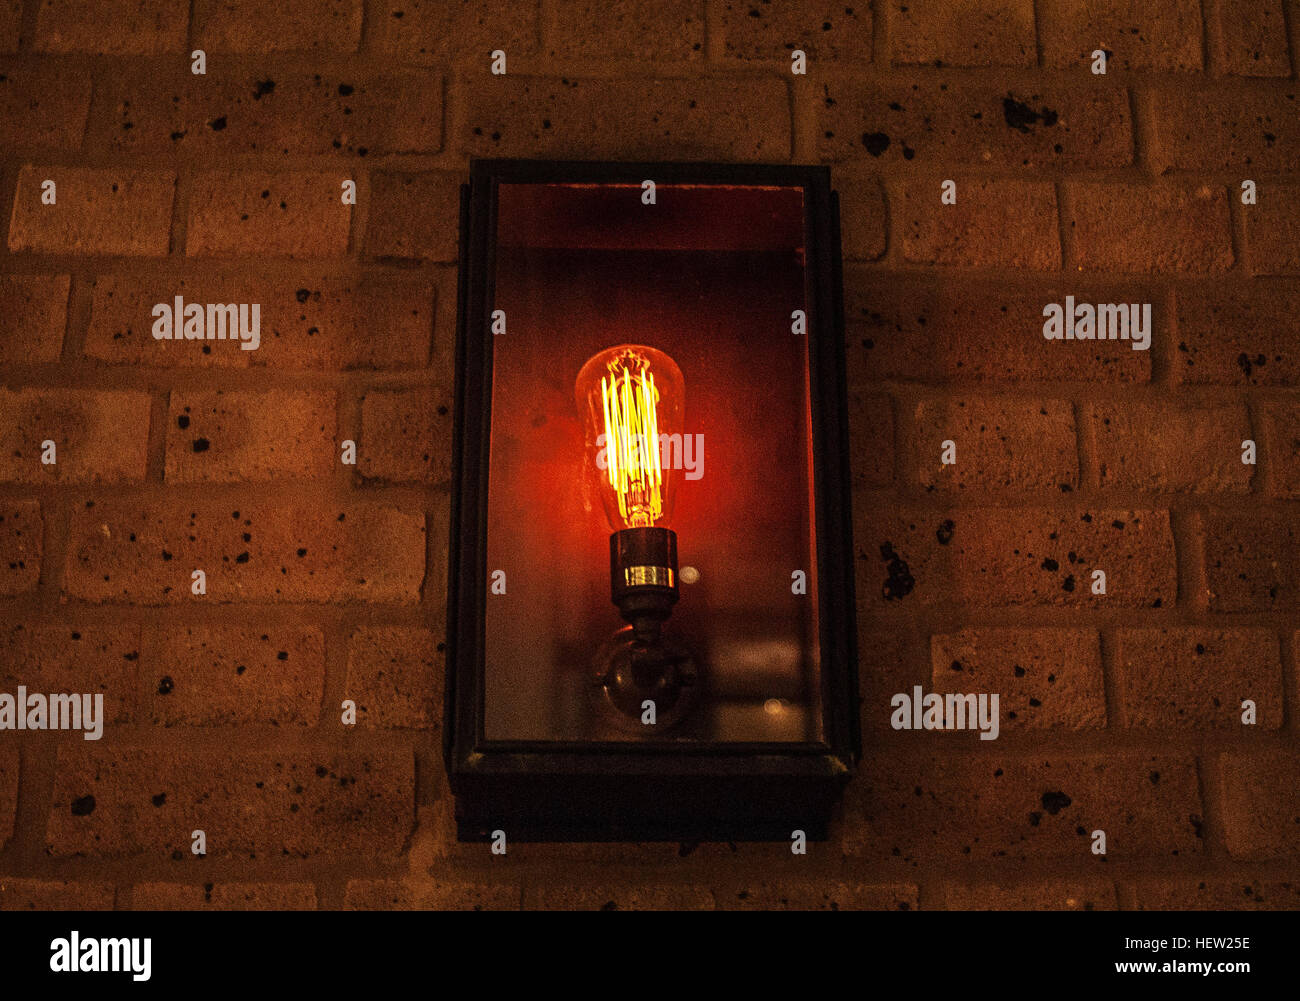 Fotografía de una lámpara encendida/lámpara de la calle Foto de stock